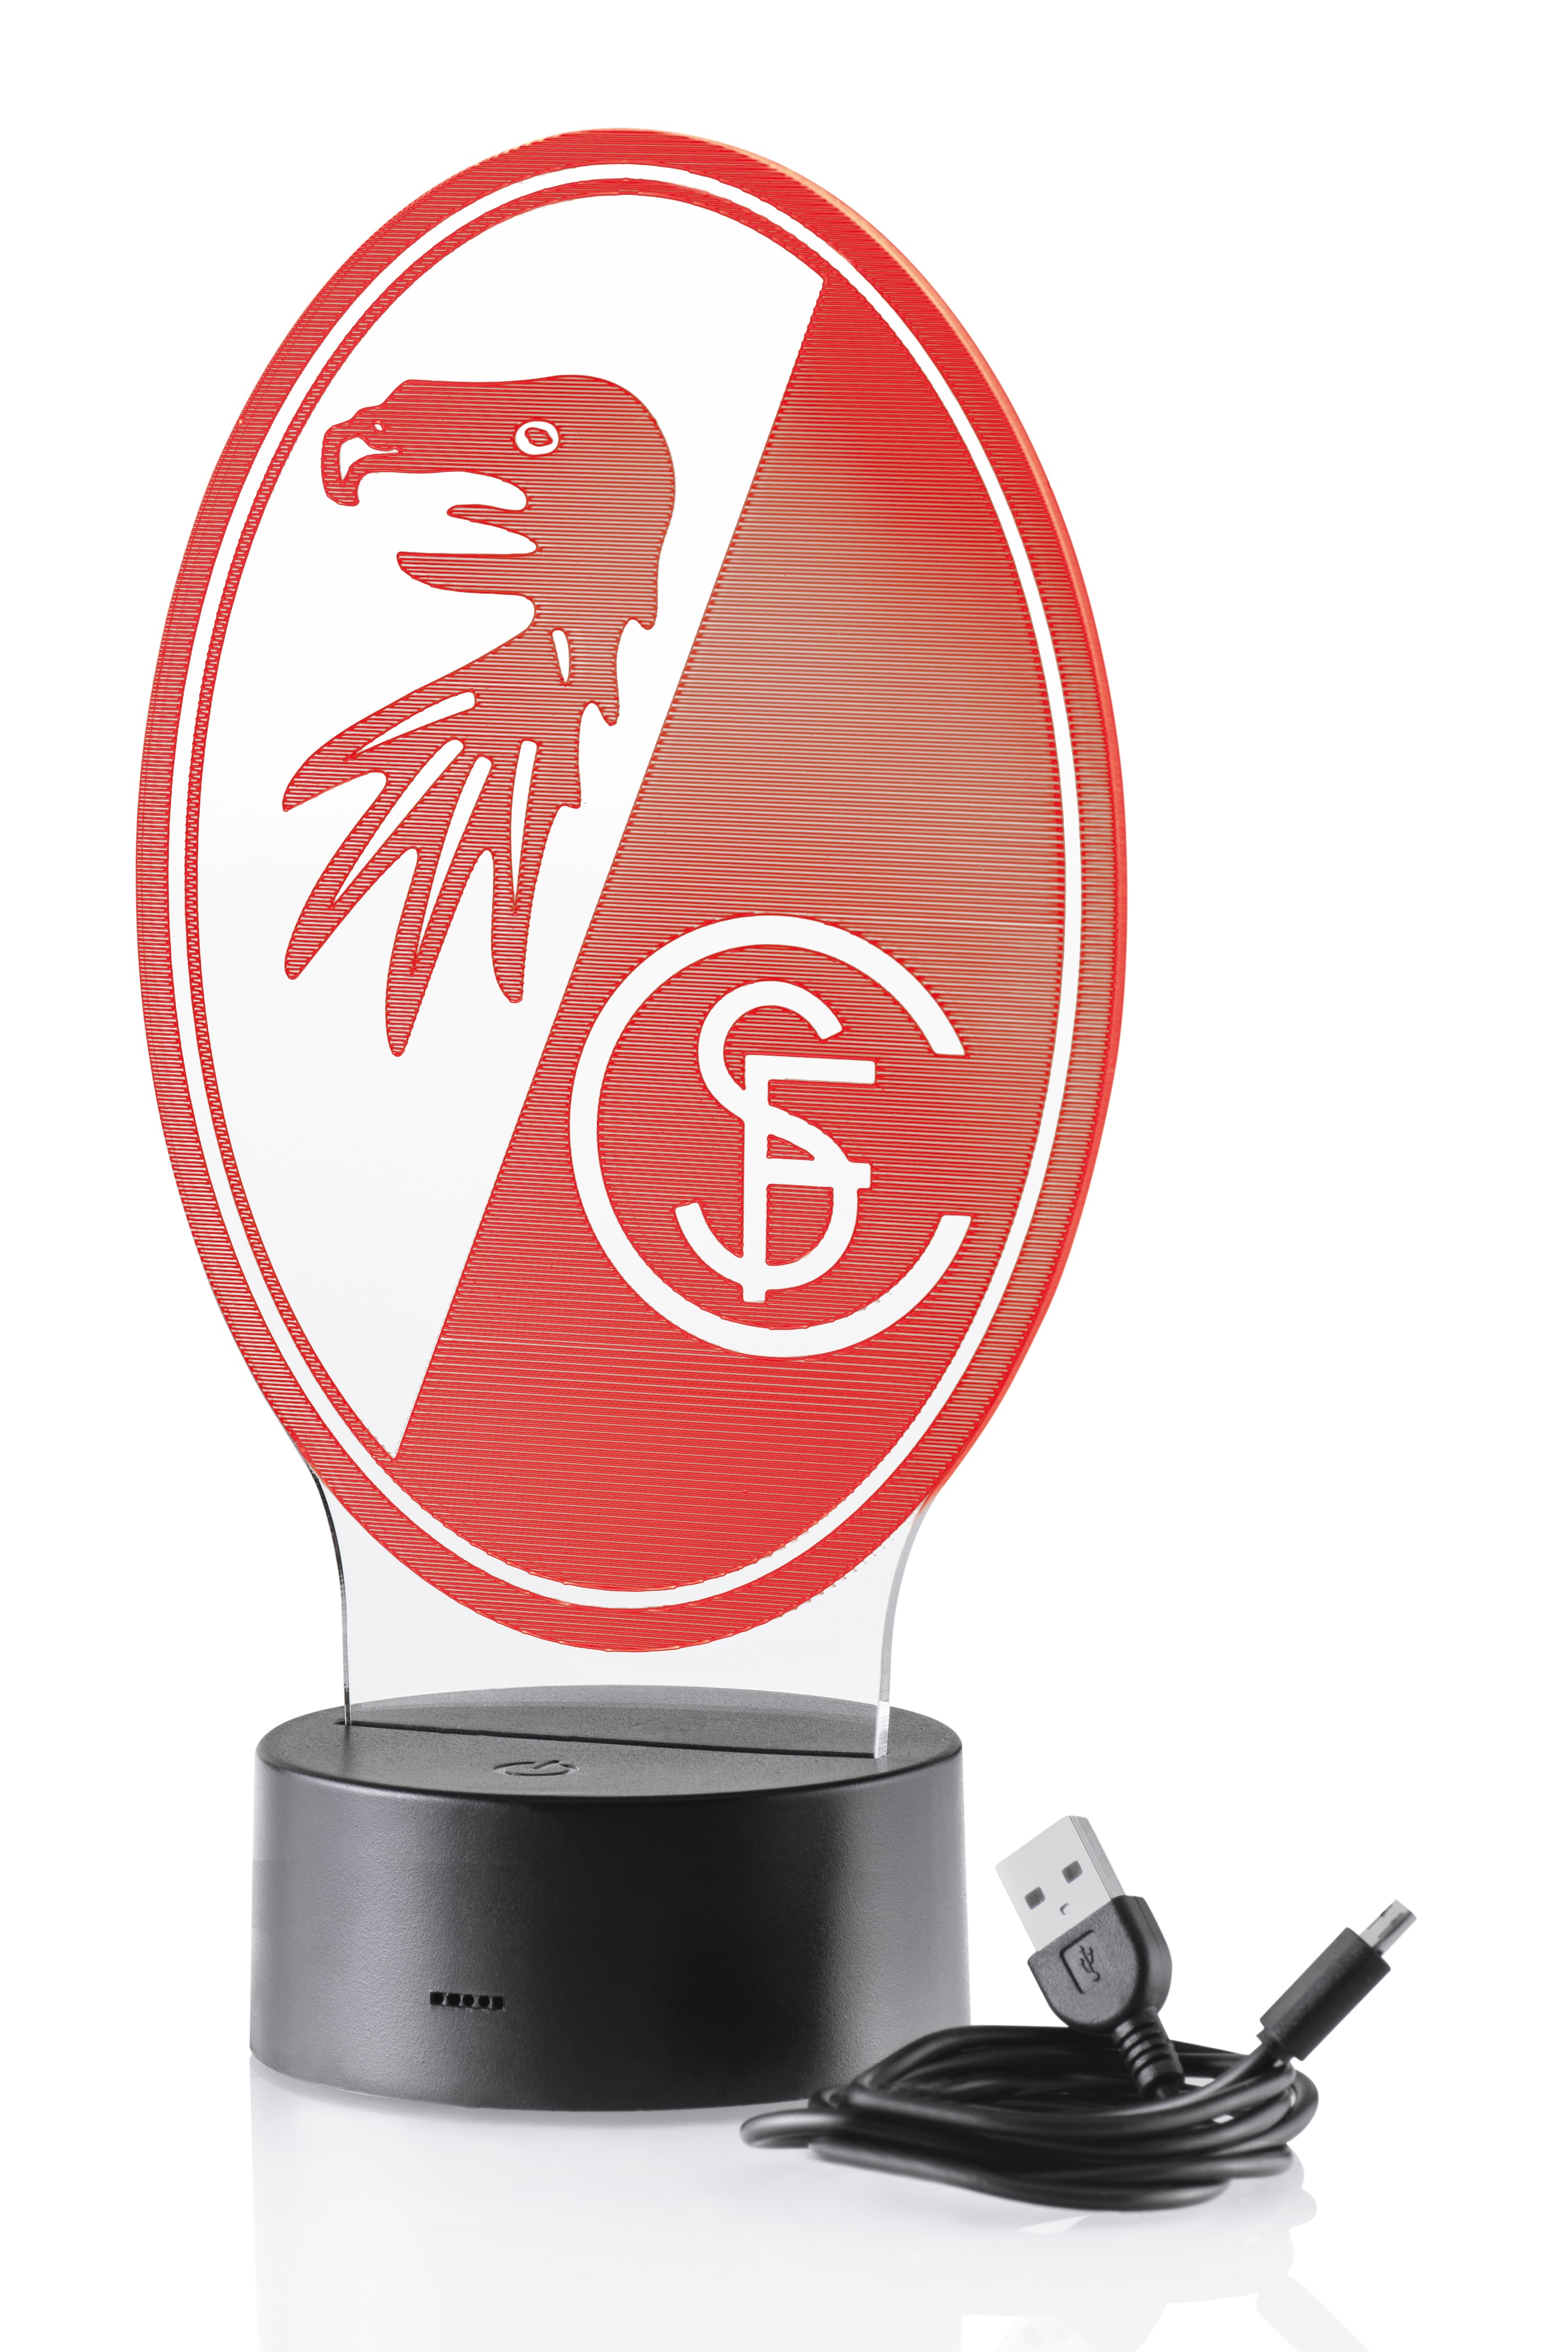 https://shop.scfreiburg.com/media/image/5e/51/75/LED-Licht-SC-Freiburg-Wappen.jpg